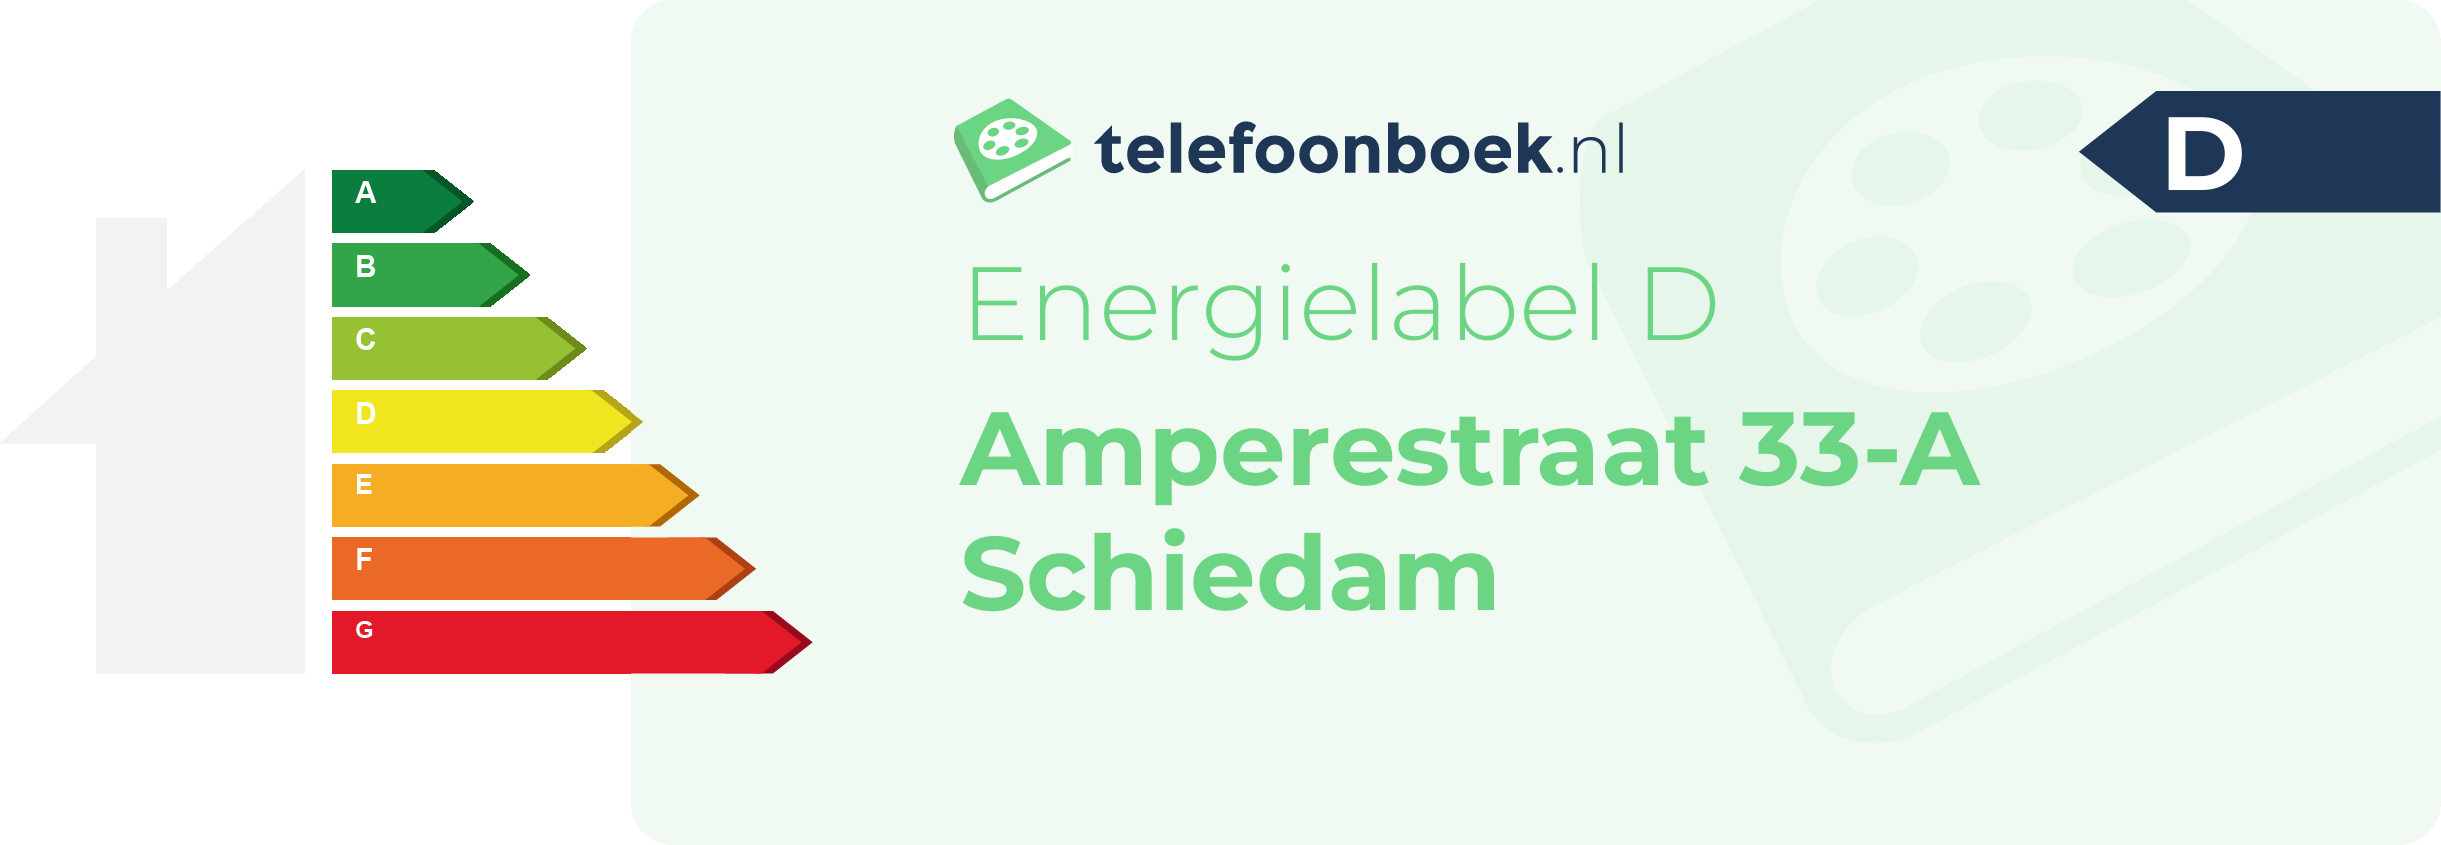 Energielabel Amperestraat 33-A Schiedam